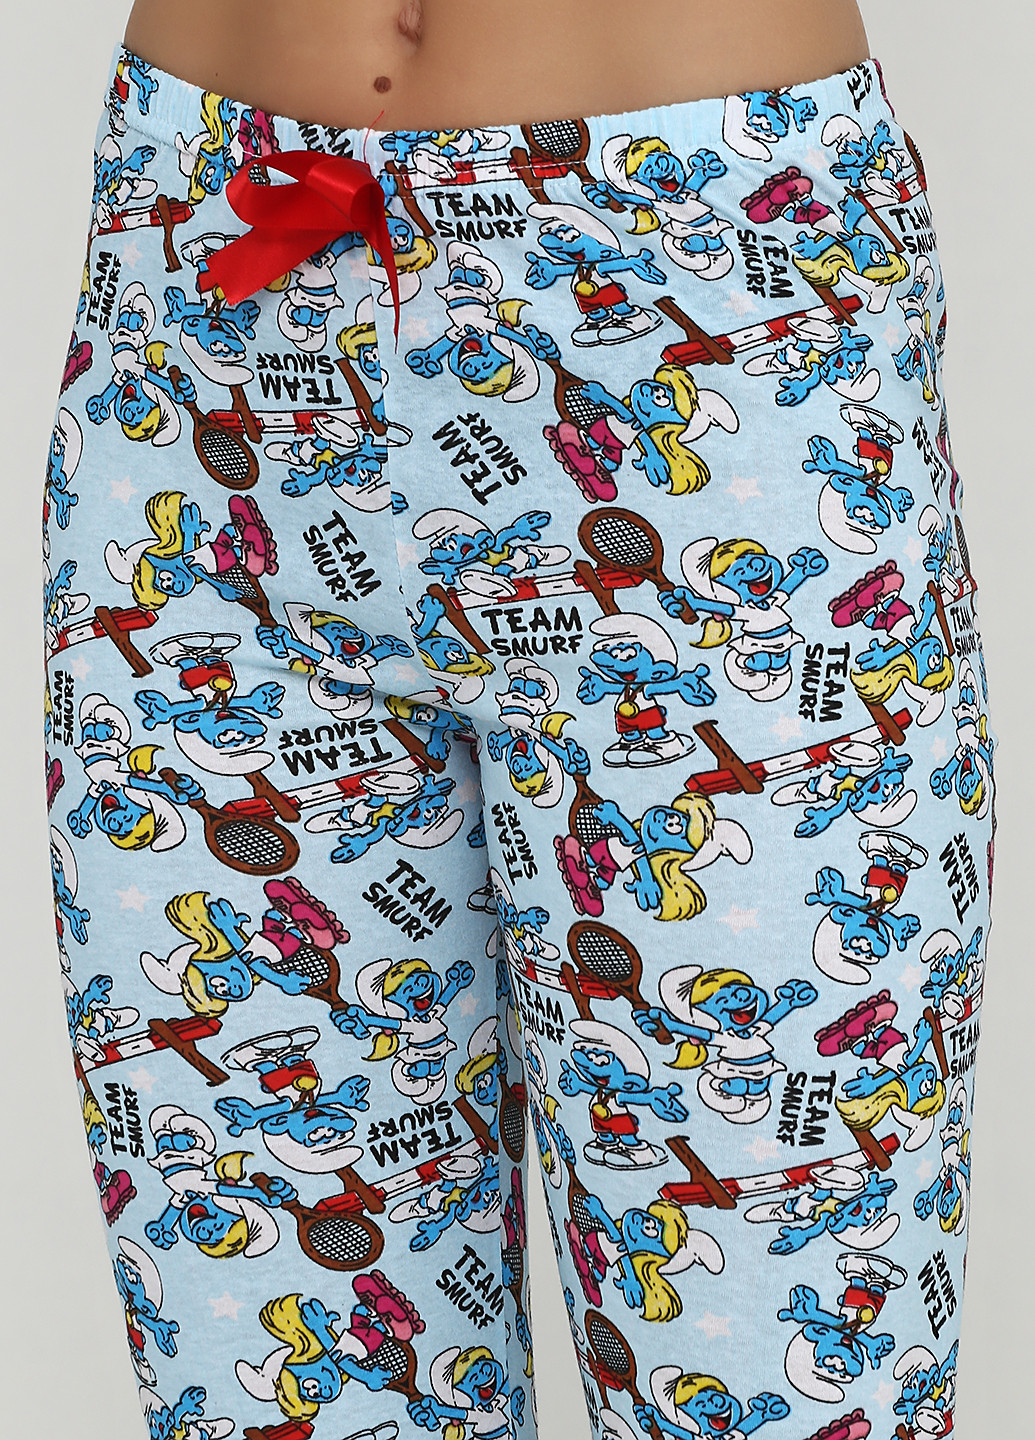 Блакитний демісезонний комплект (лонгслив, брюки, маска для сна) Stil Moda Pijama